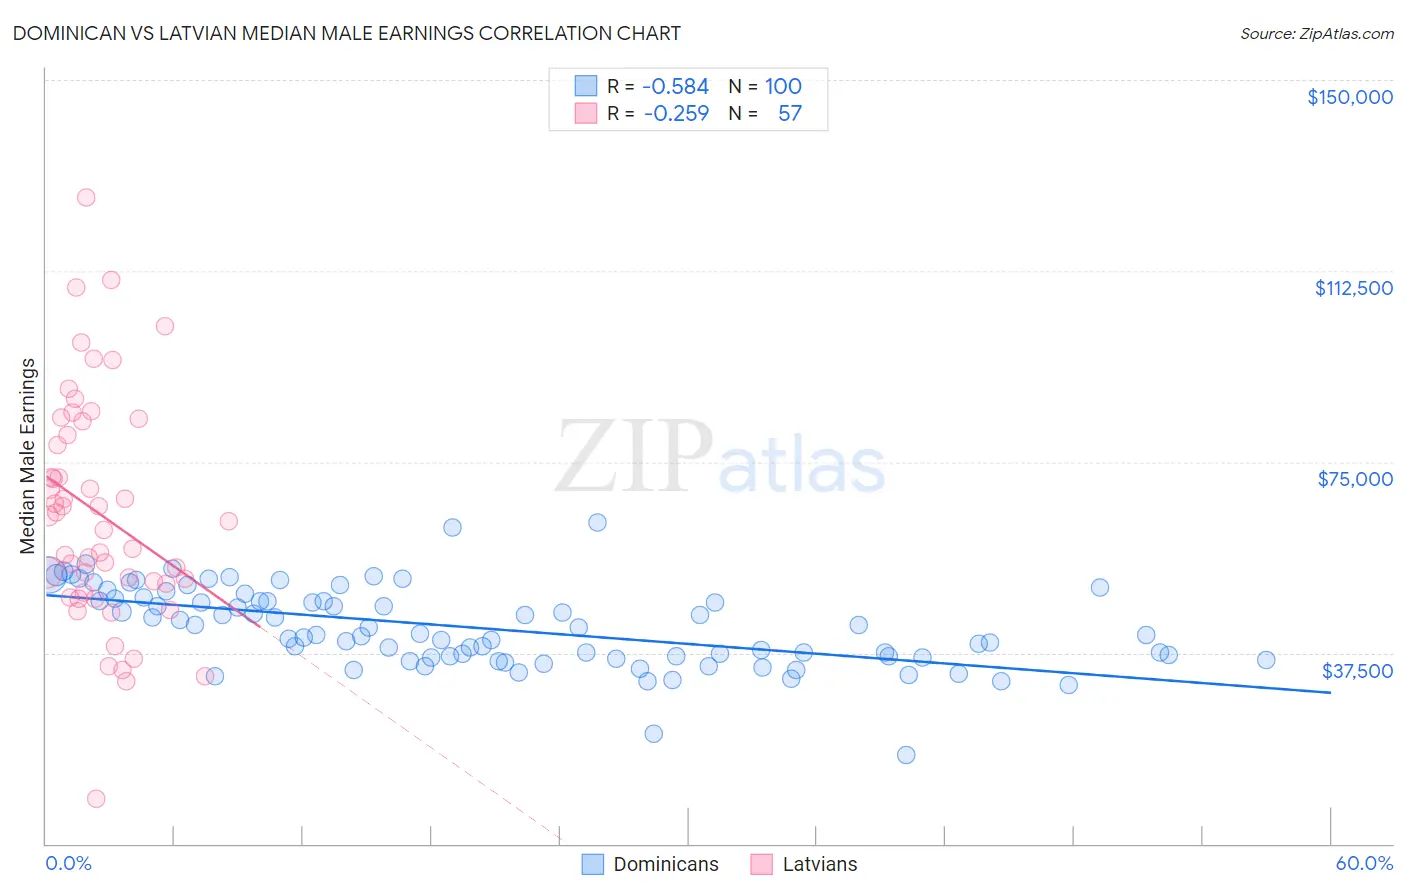 Dominican vs Latvian Median Male Earnings